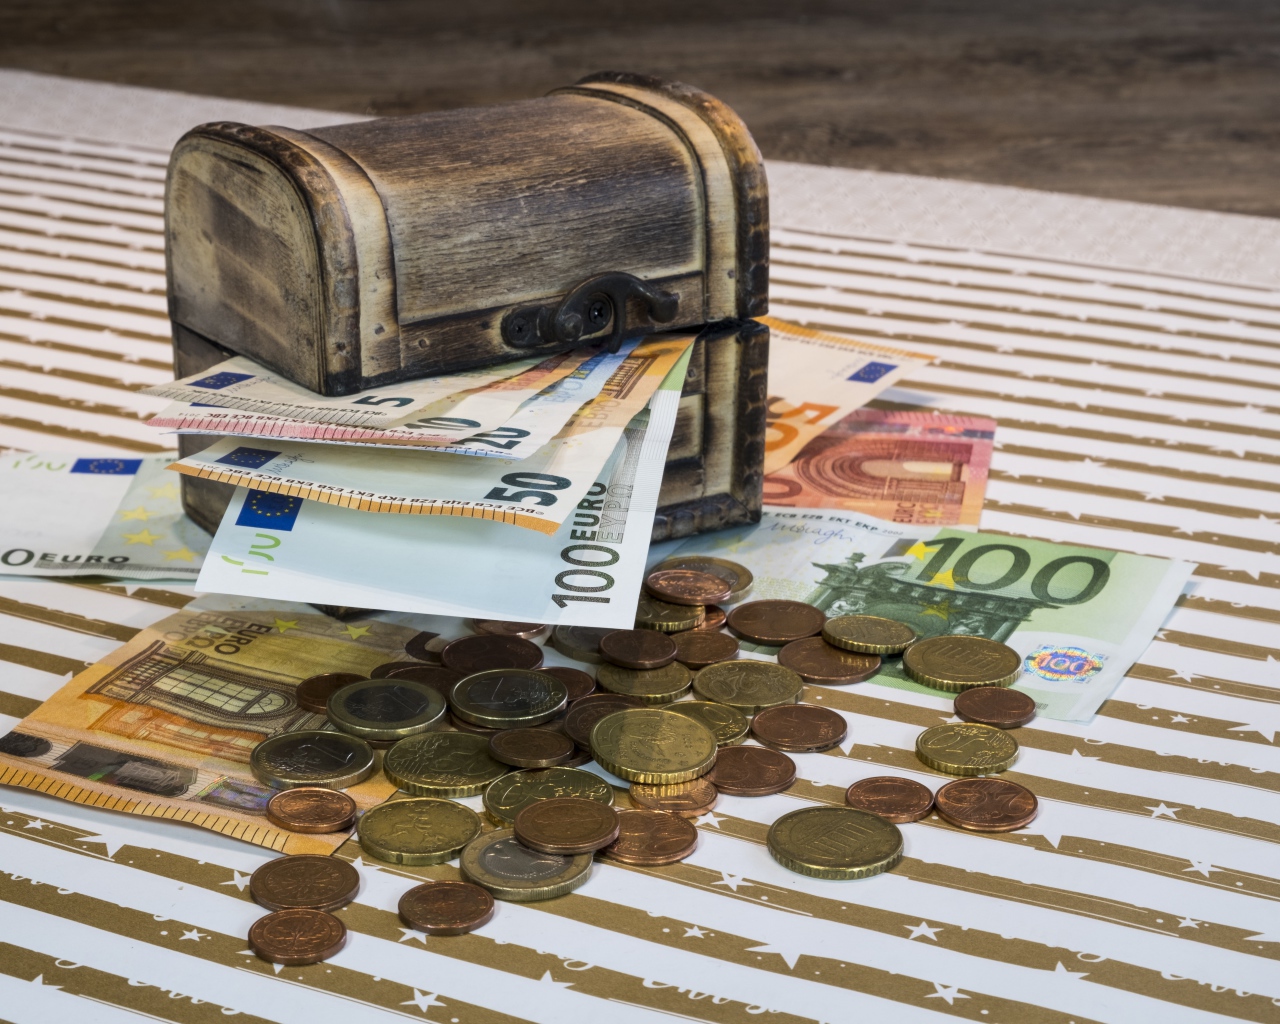 Деревянная шкатулка с бумажными купюрами евро и монетами